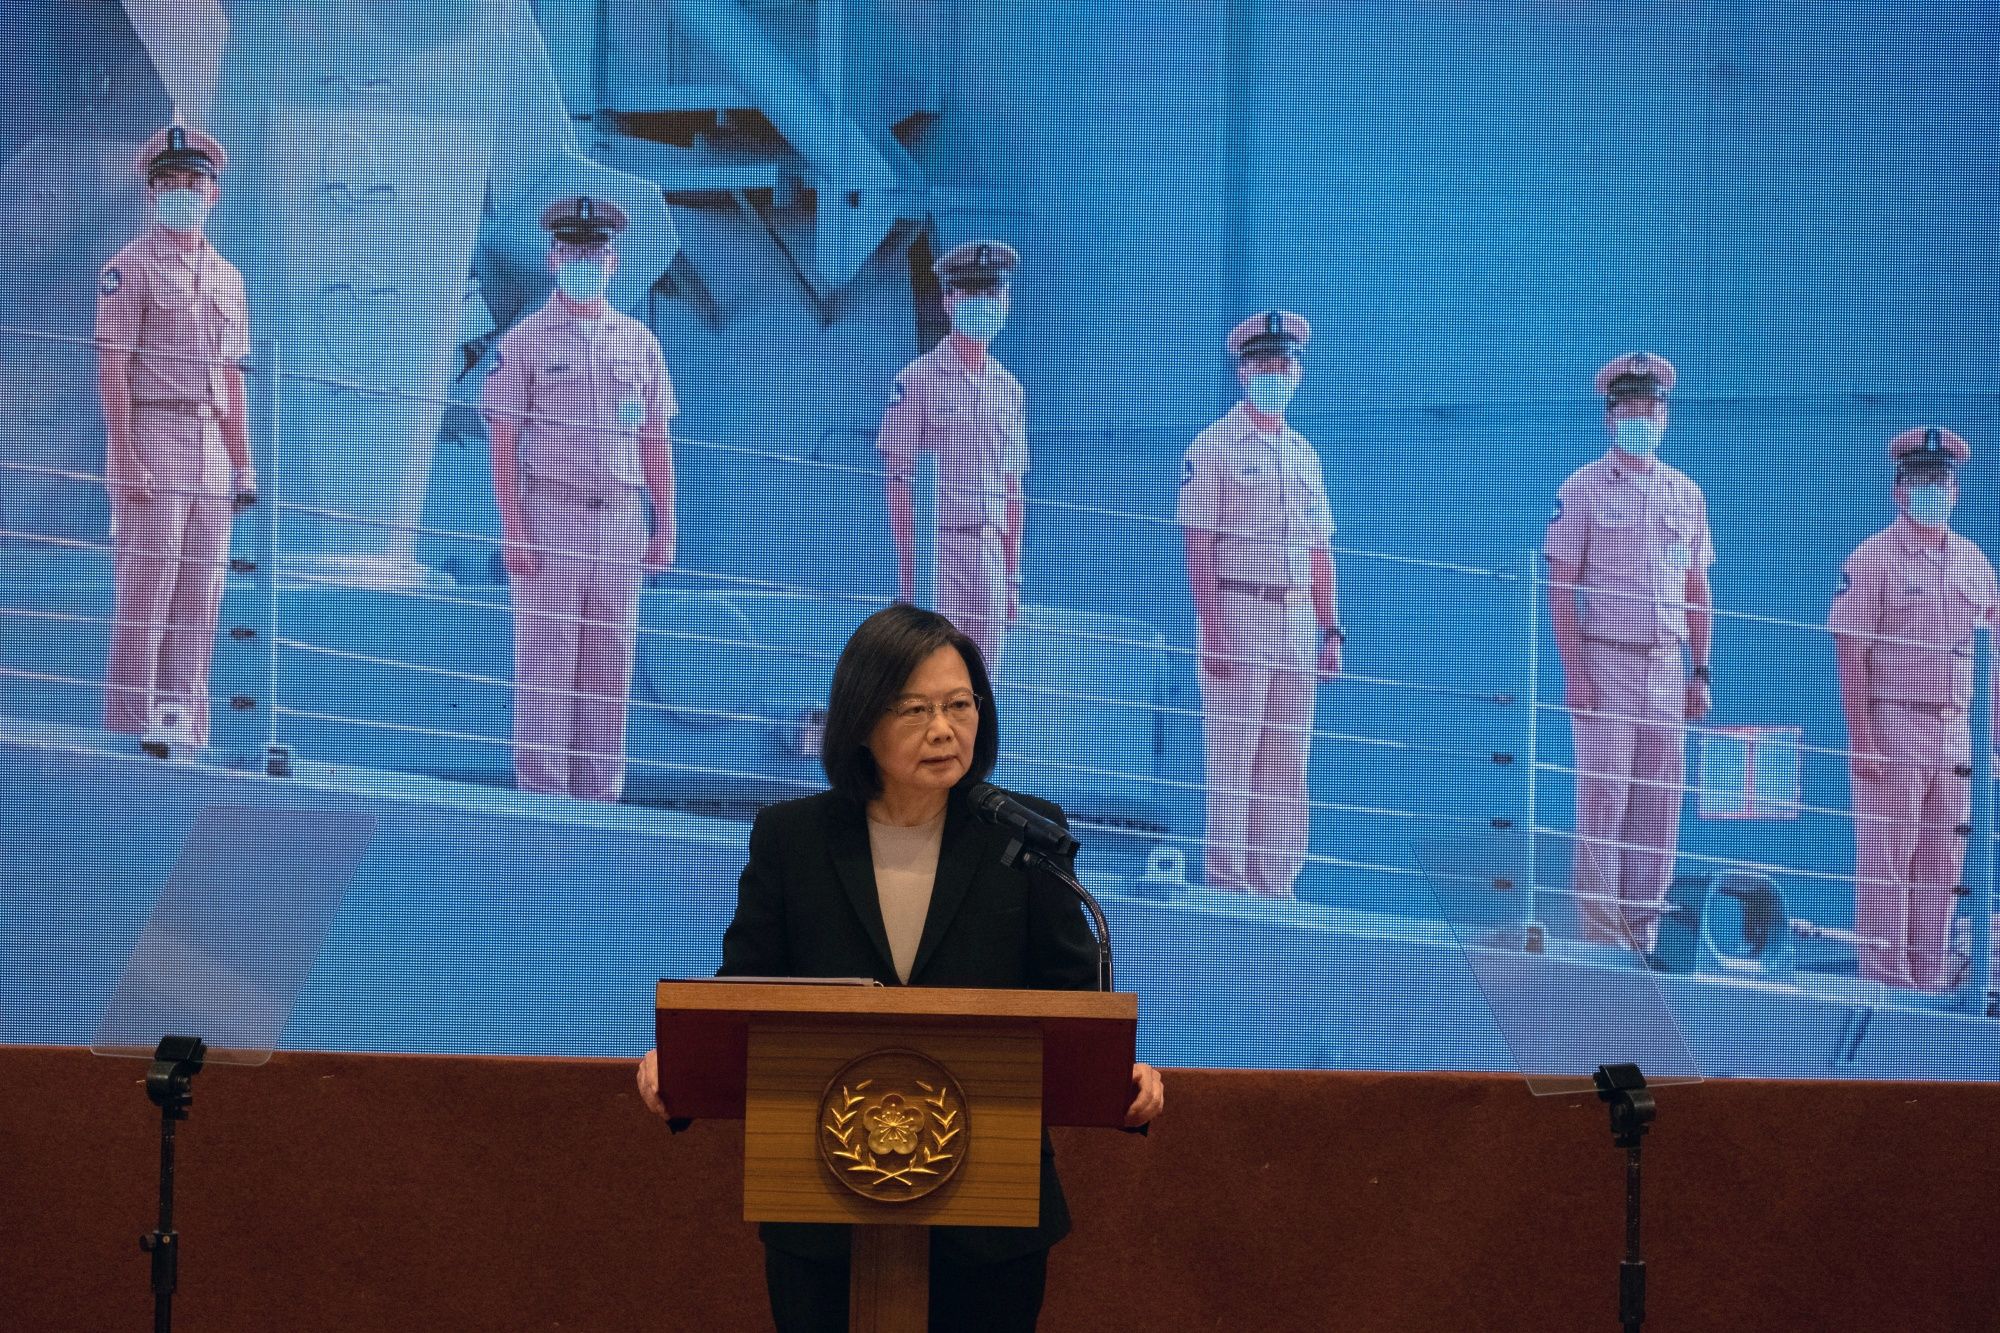 La presidenta de Taiwán también señaló que solo a través del “diálogo y la colaboración” se podrá llevar “la seguridad y la felicidad” a más gente. (BLOOMBERG)